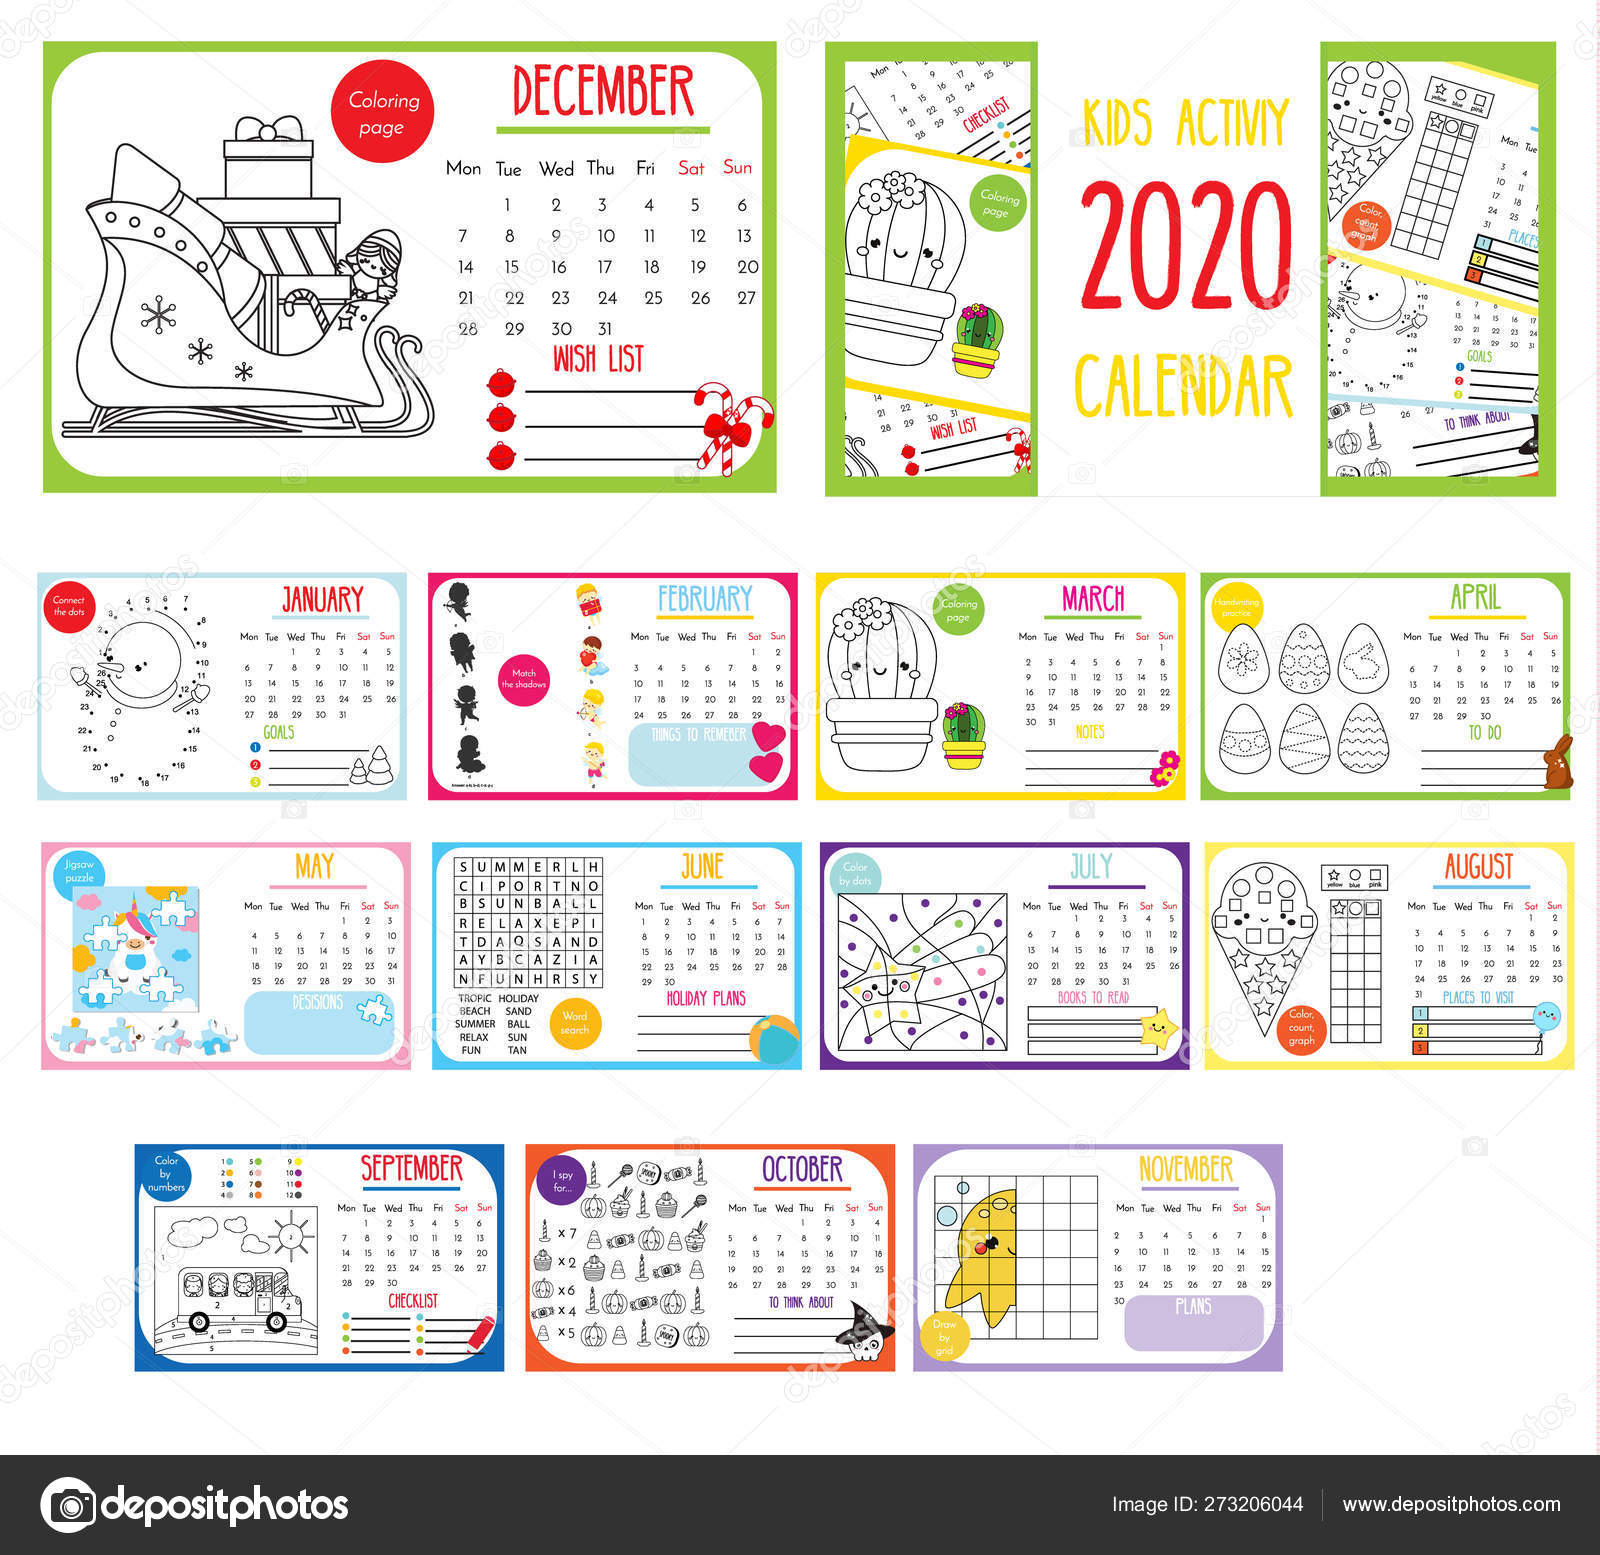 Kids Activity Calendar. 2020 Annual Calendar With